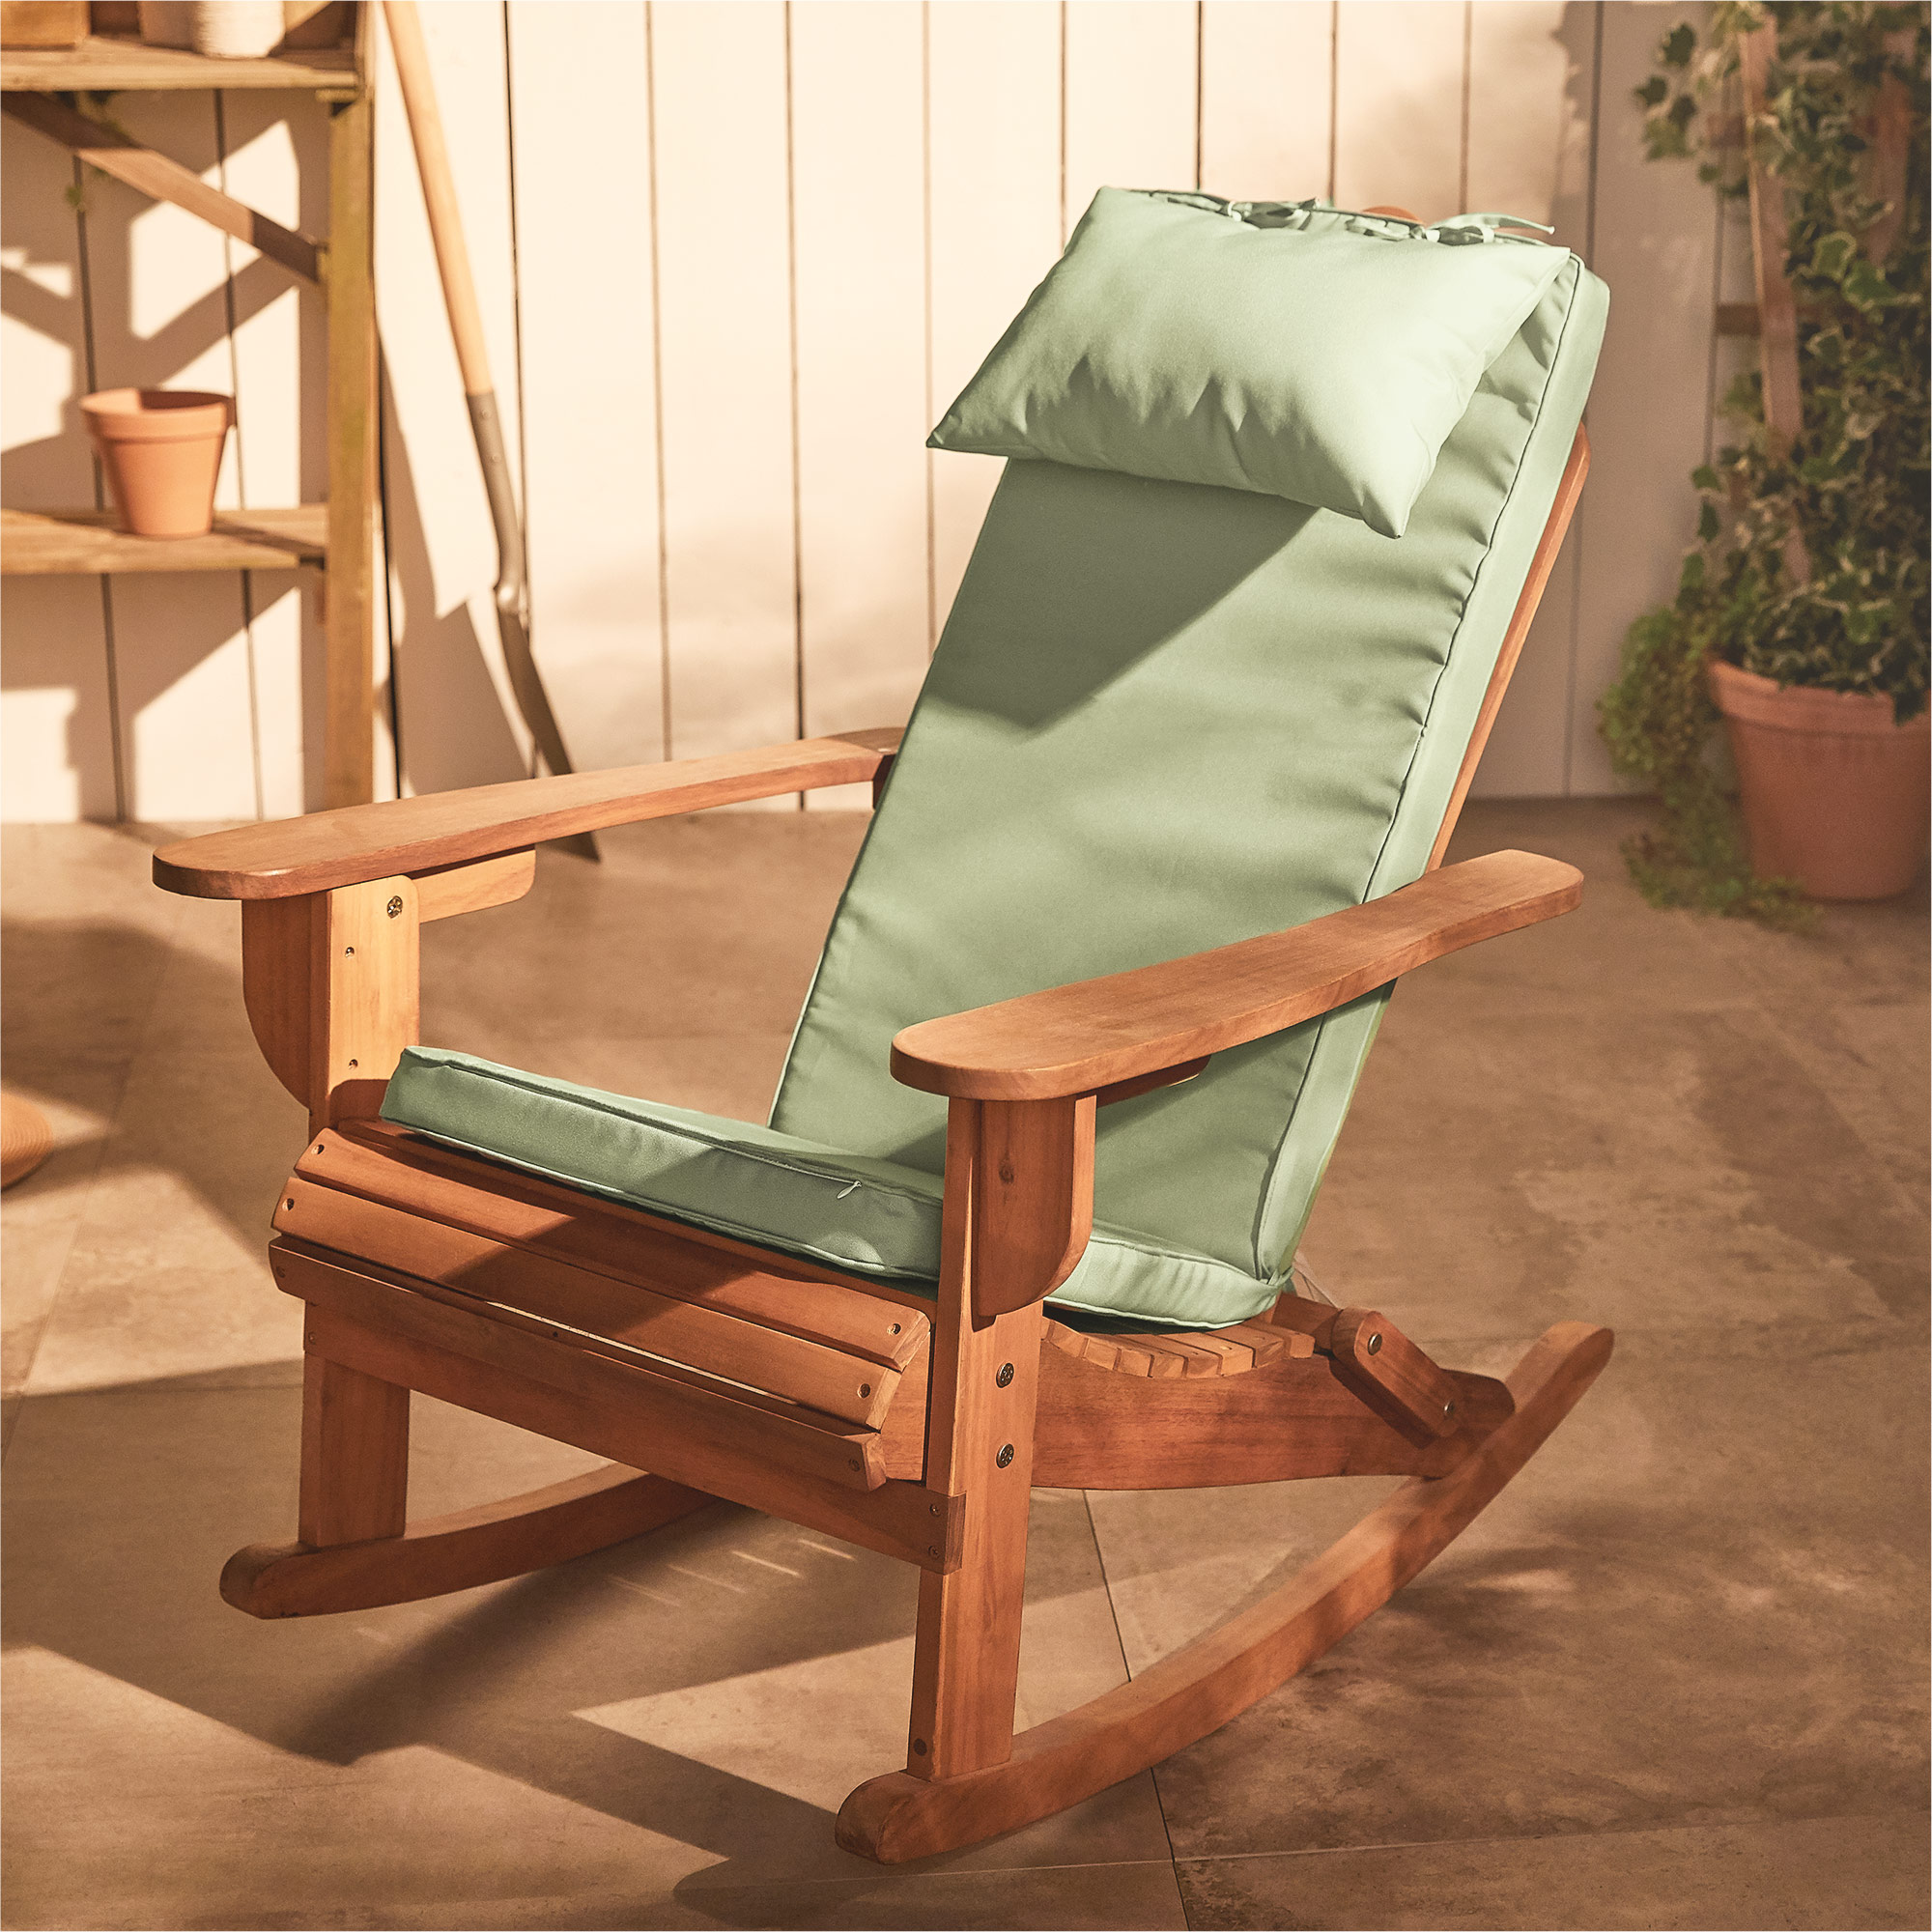 VonHaus Adirondack Sage Green Chair Cushion | eBay